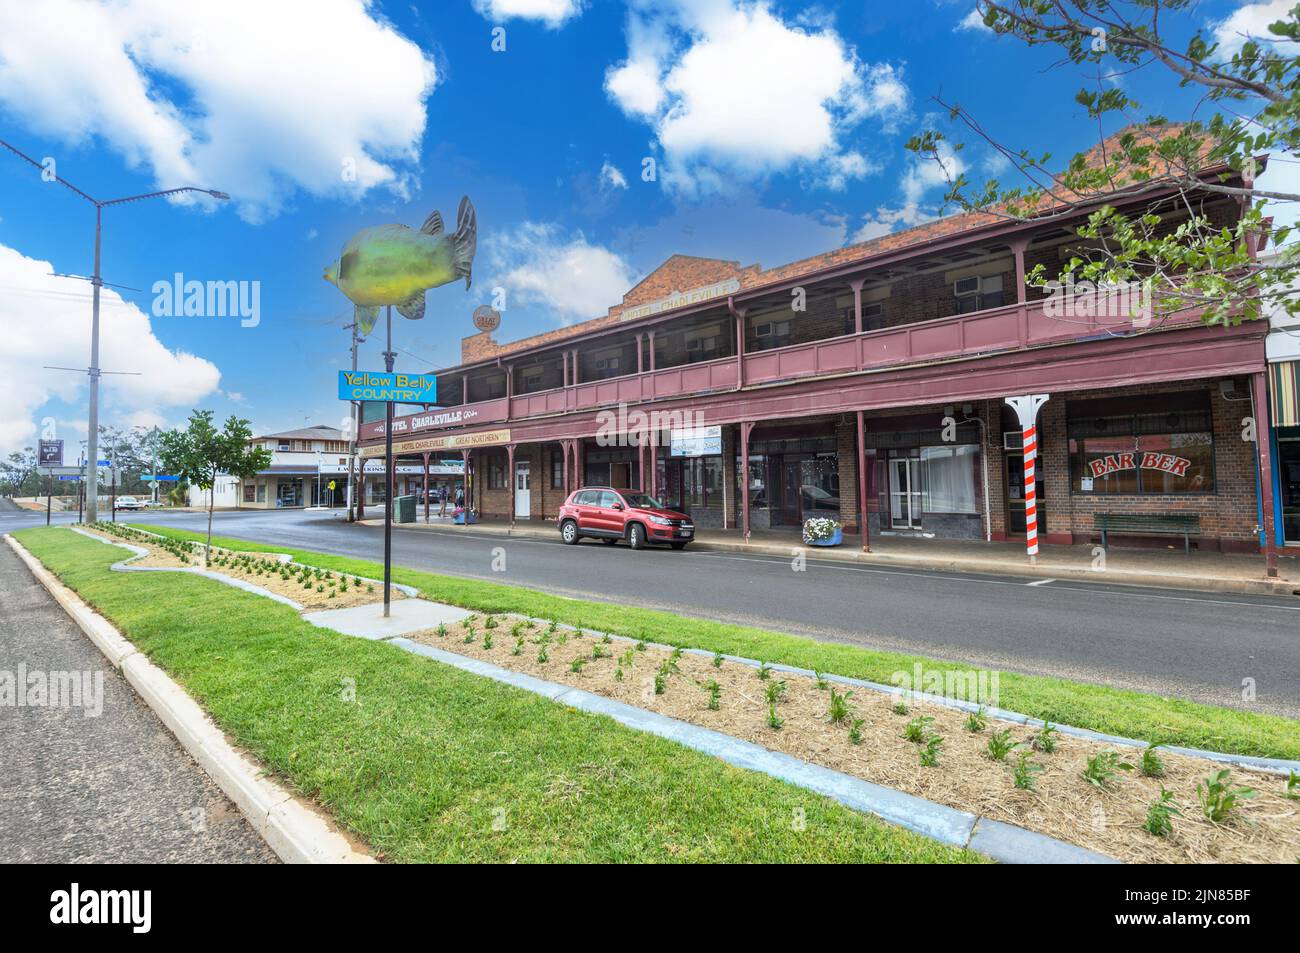 Vue sur l'ancien pub de l'hôtel Charleville dans Charleville, Queensland, Queensland, Australie Banque D'Images